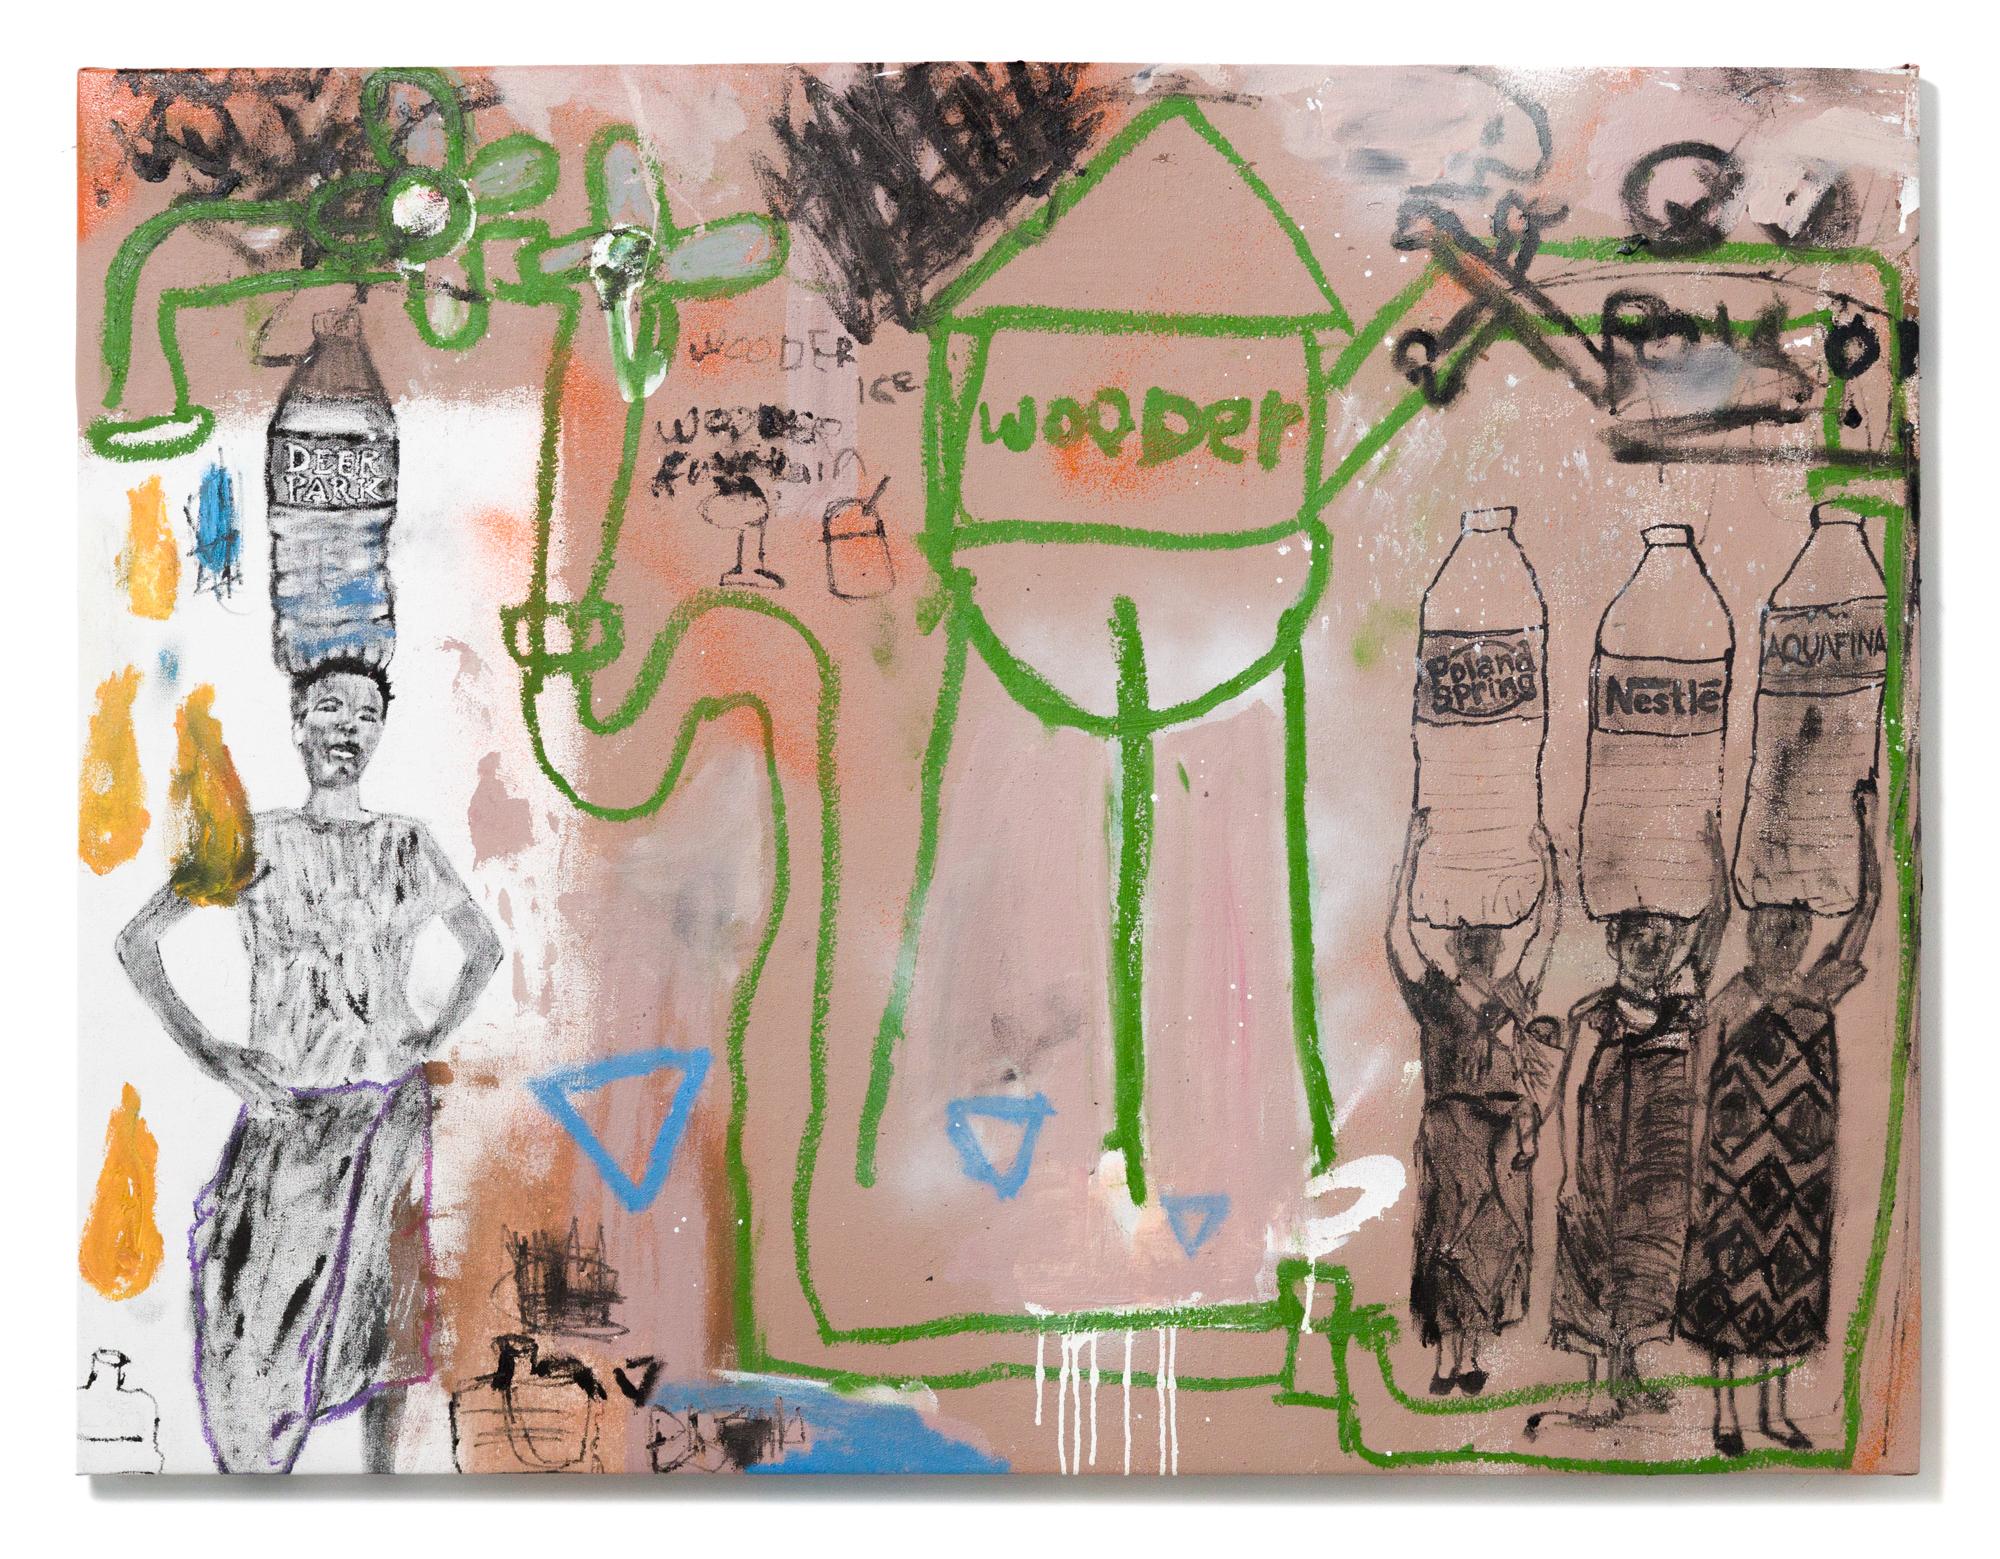 « Third World Tendencies »  Tour d'eau, urbaine, figures, commentaire culturla - Contemporain Mixed Media Art par Caff Adeus